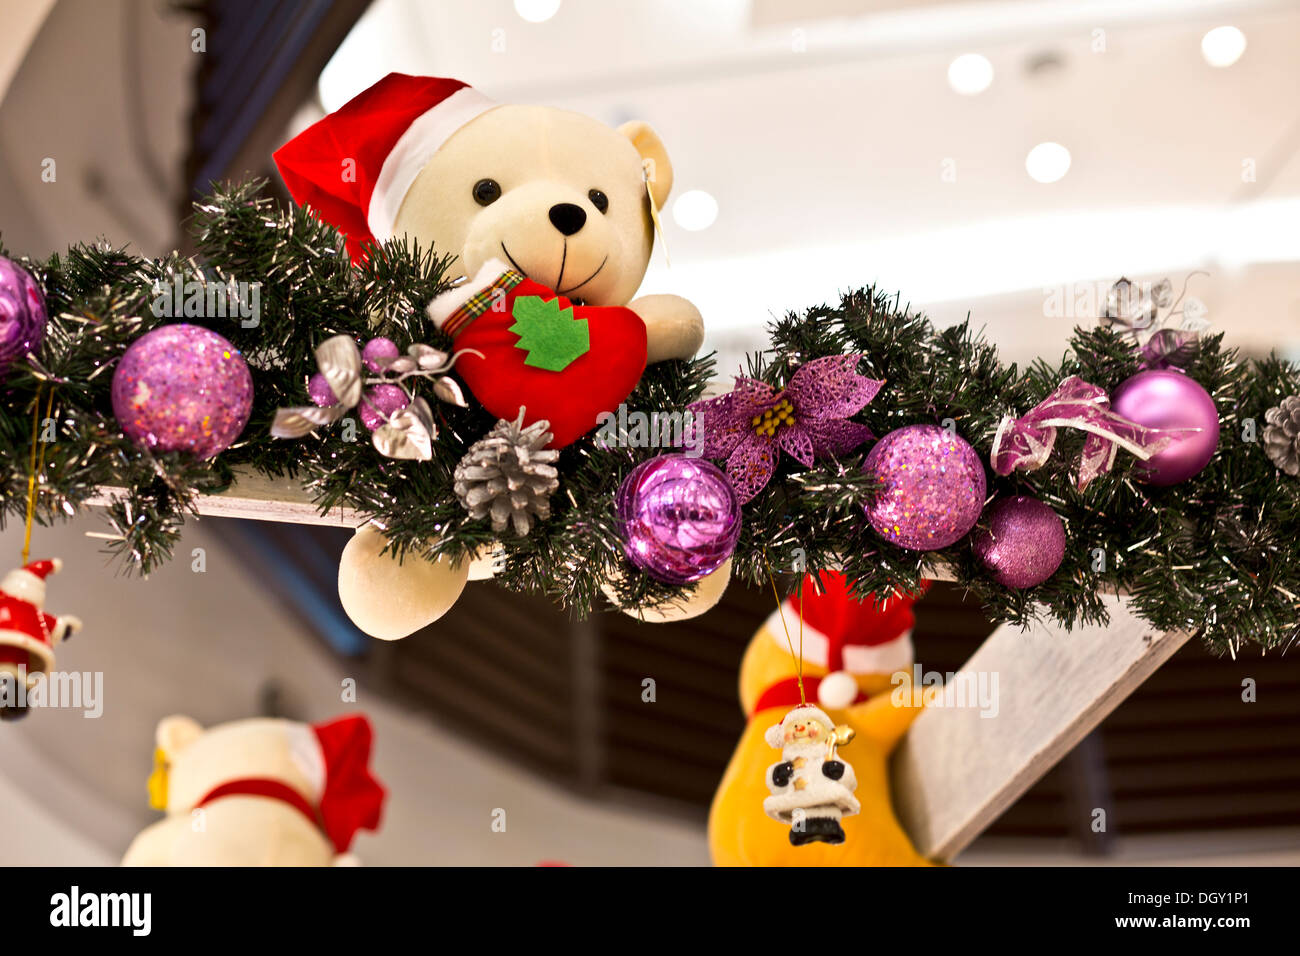 Weihnachten Dekorationen Teddybär mit Hut und Strumpf Stockfoto